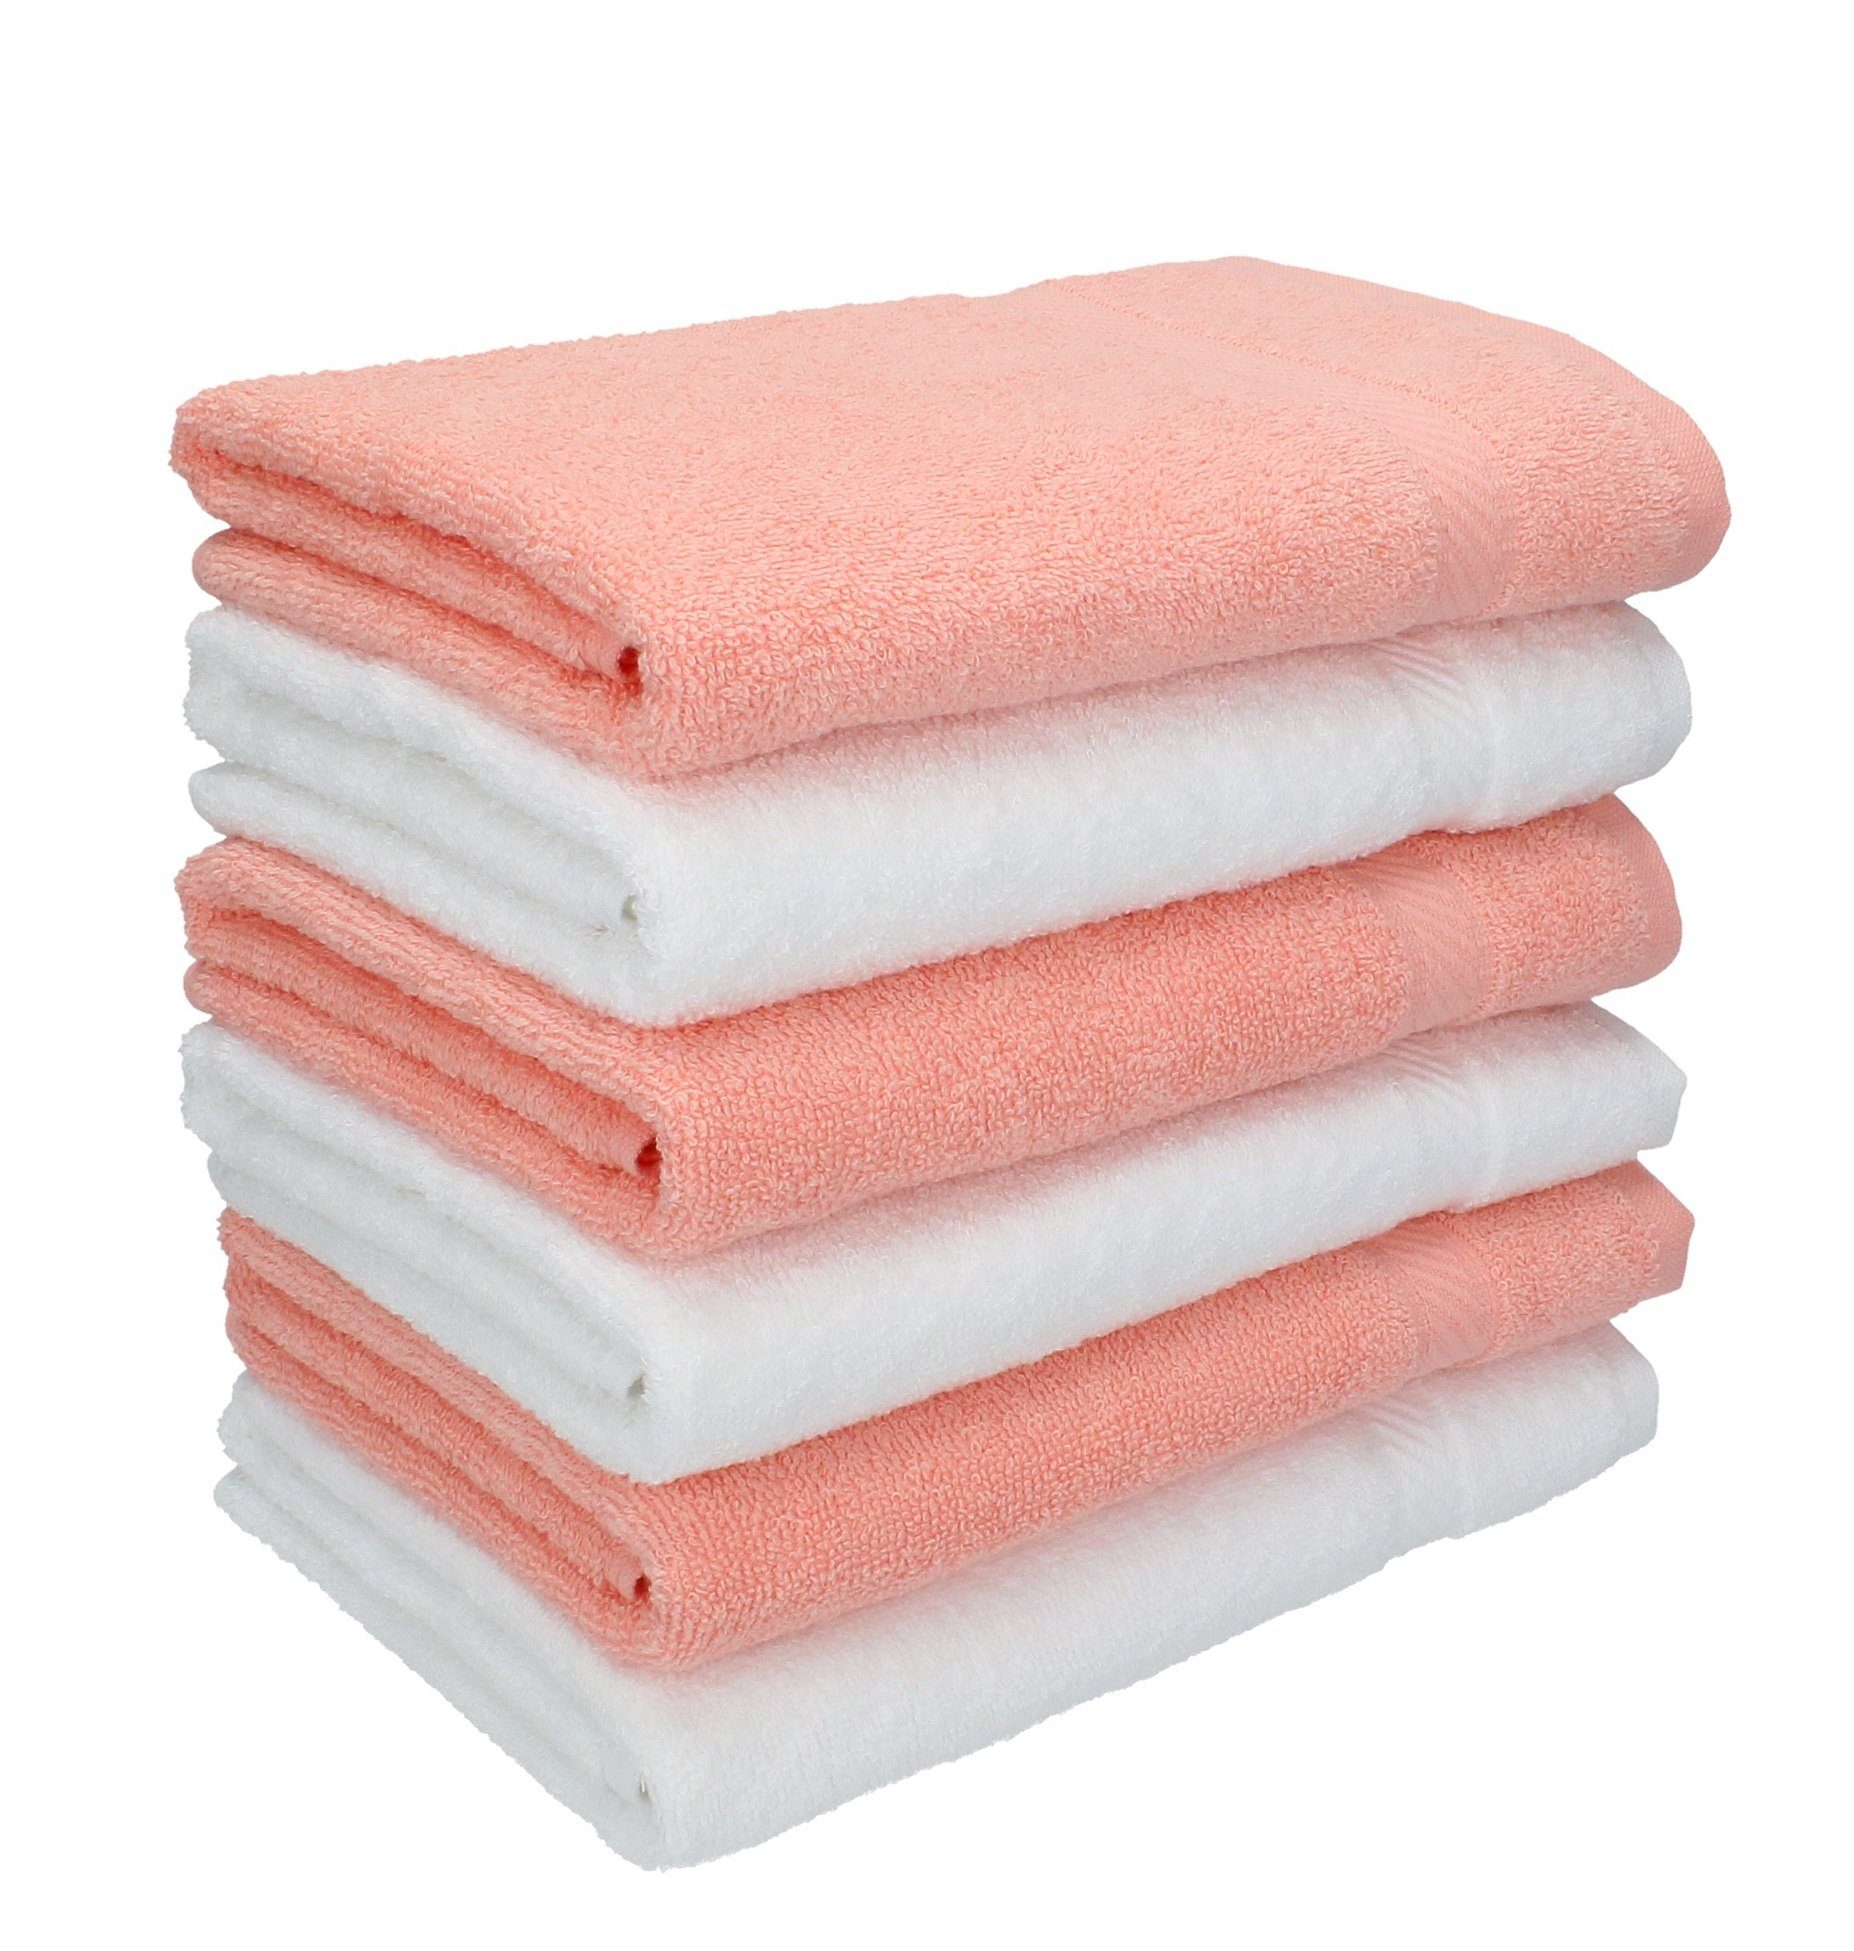 Betz Handtücher 6 Stück Handtücher Palermo Größe 50 x 100 cm Farbe weiß und apricot, 100% Baumwolle | Kinderhandtücher